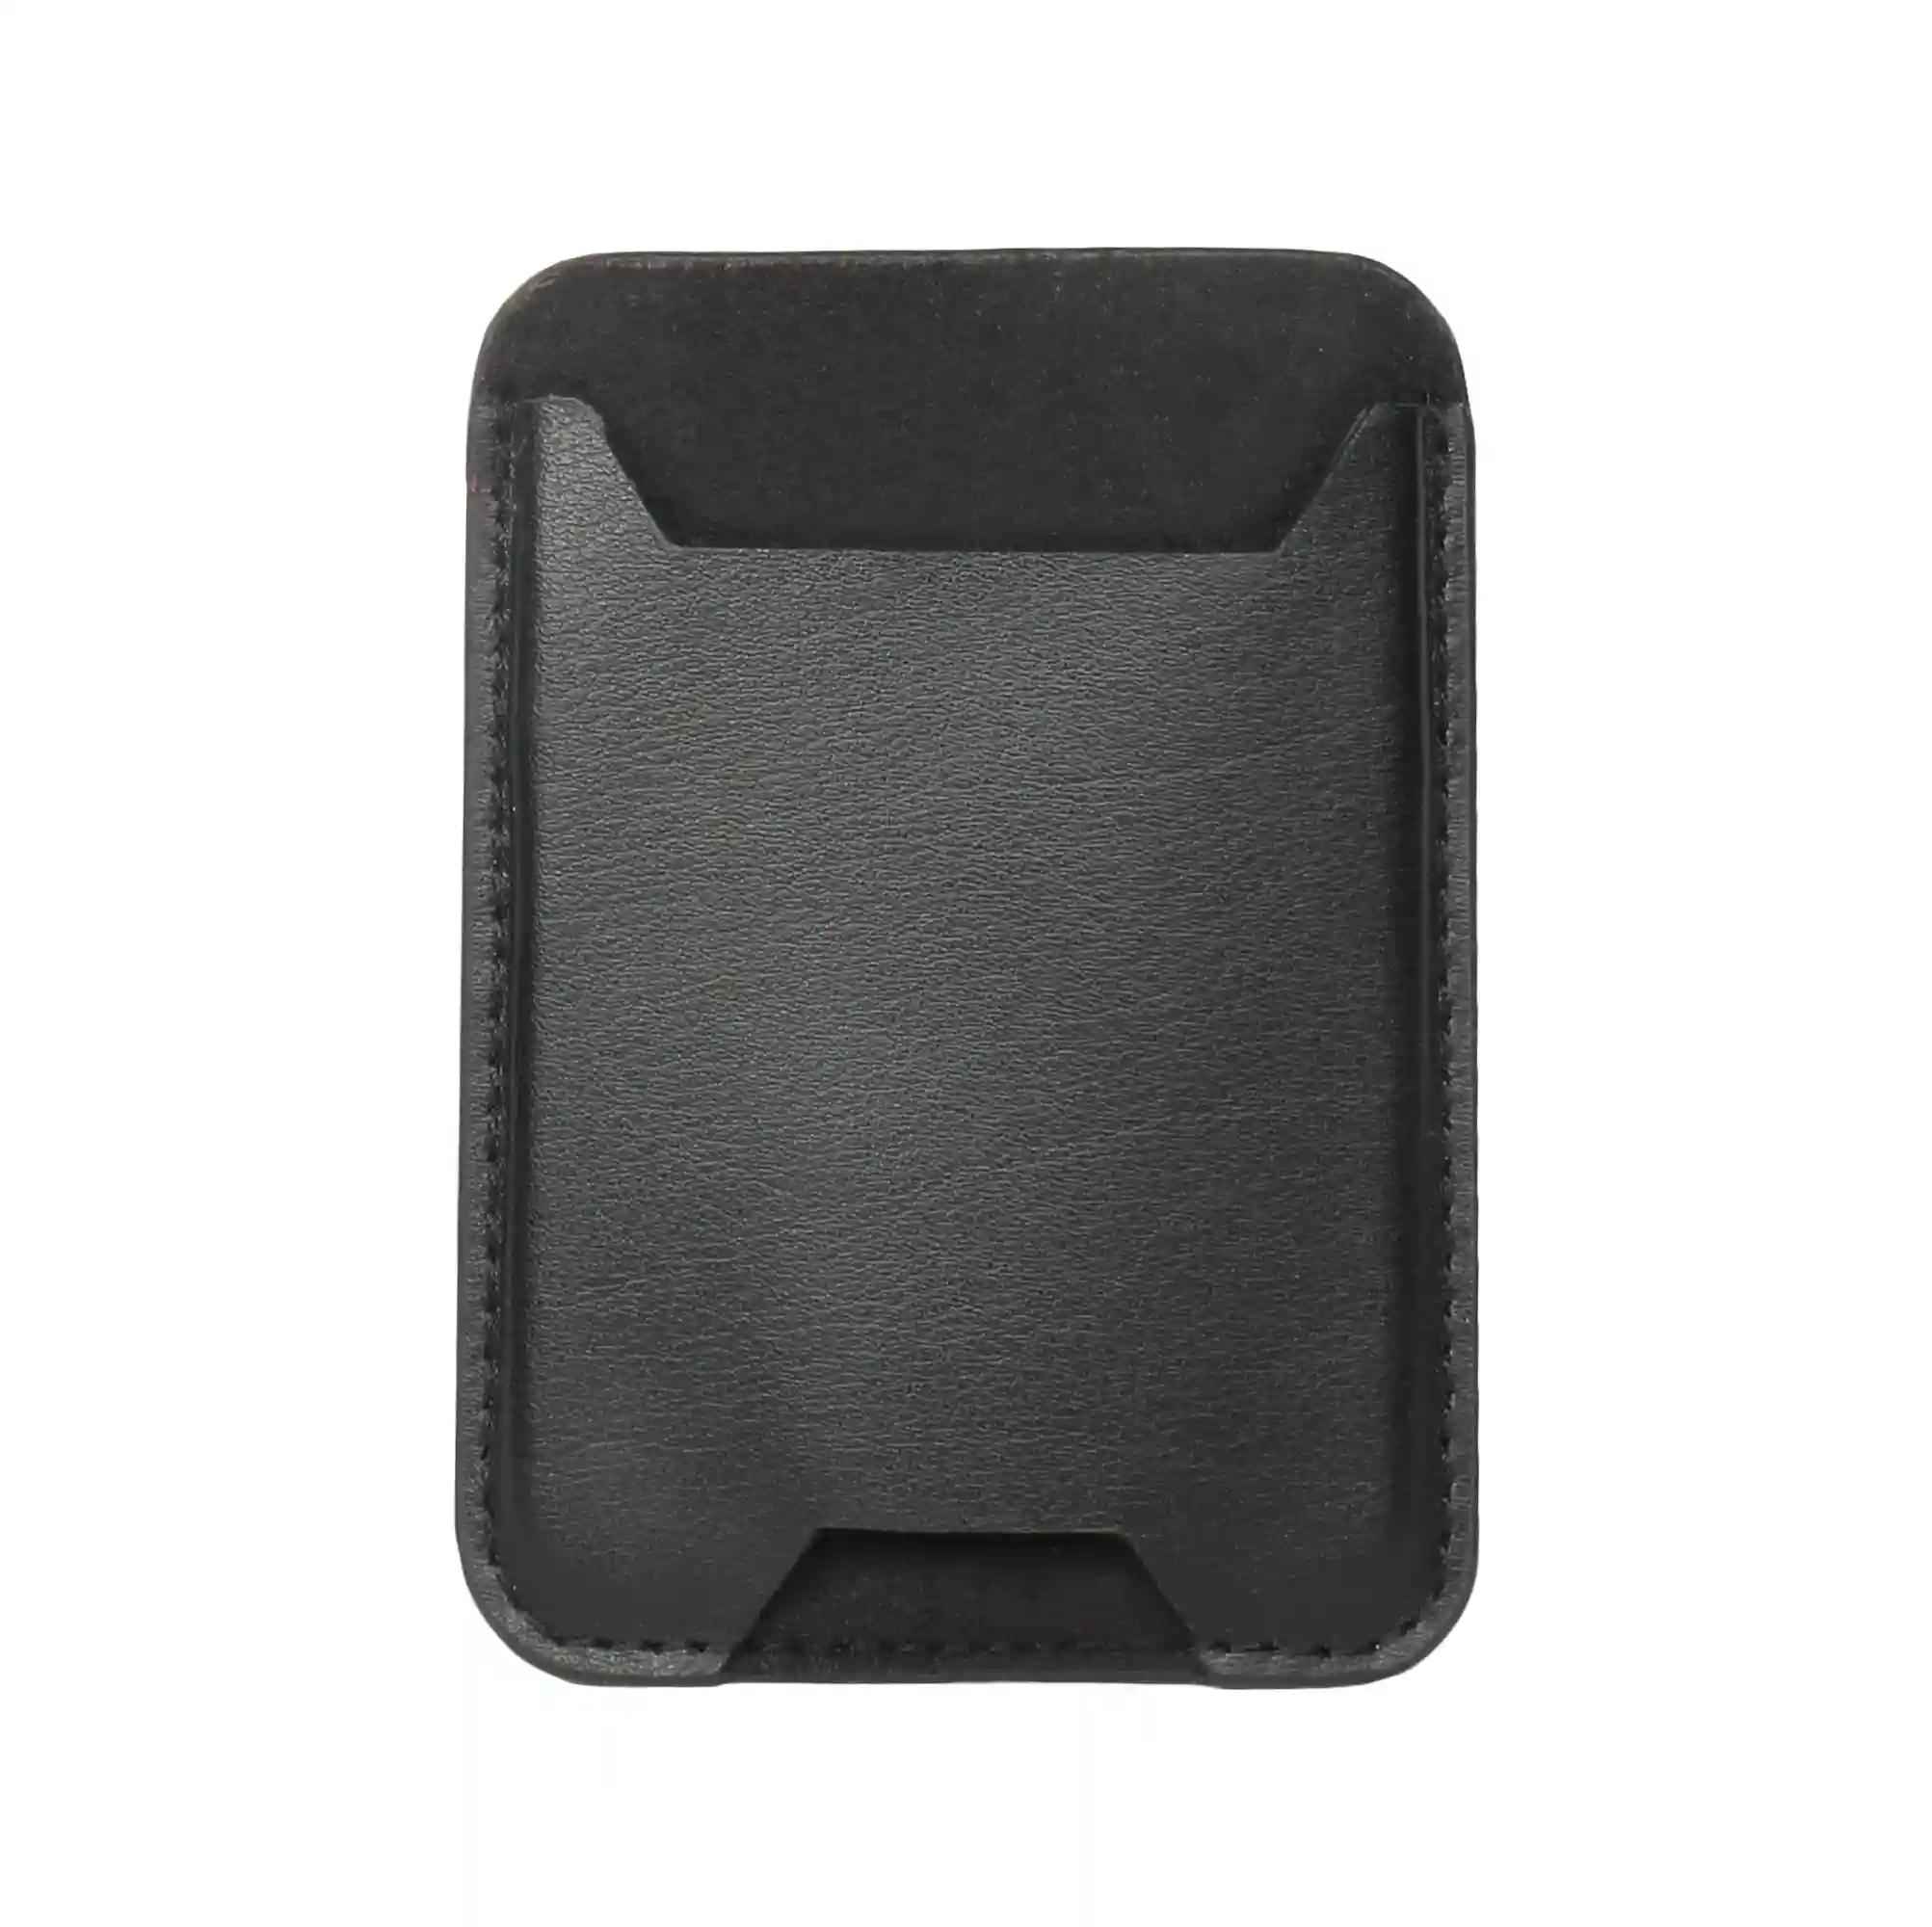 Leather Mobile Pocket Holder - Black